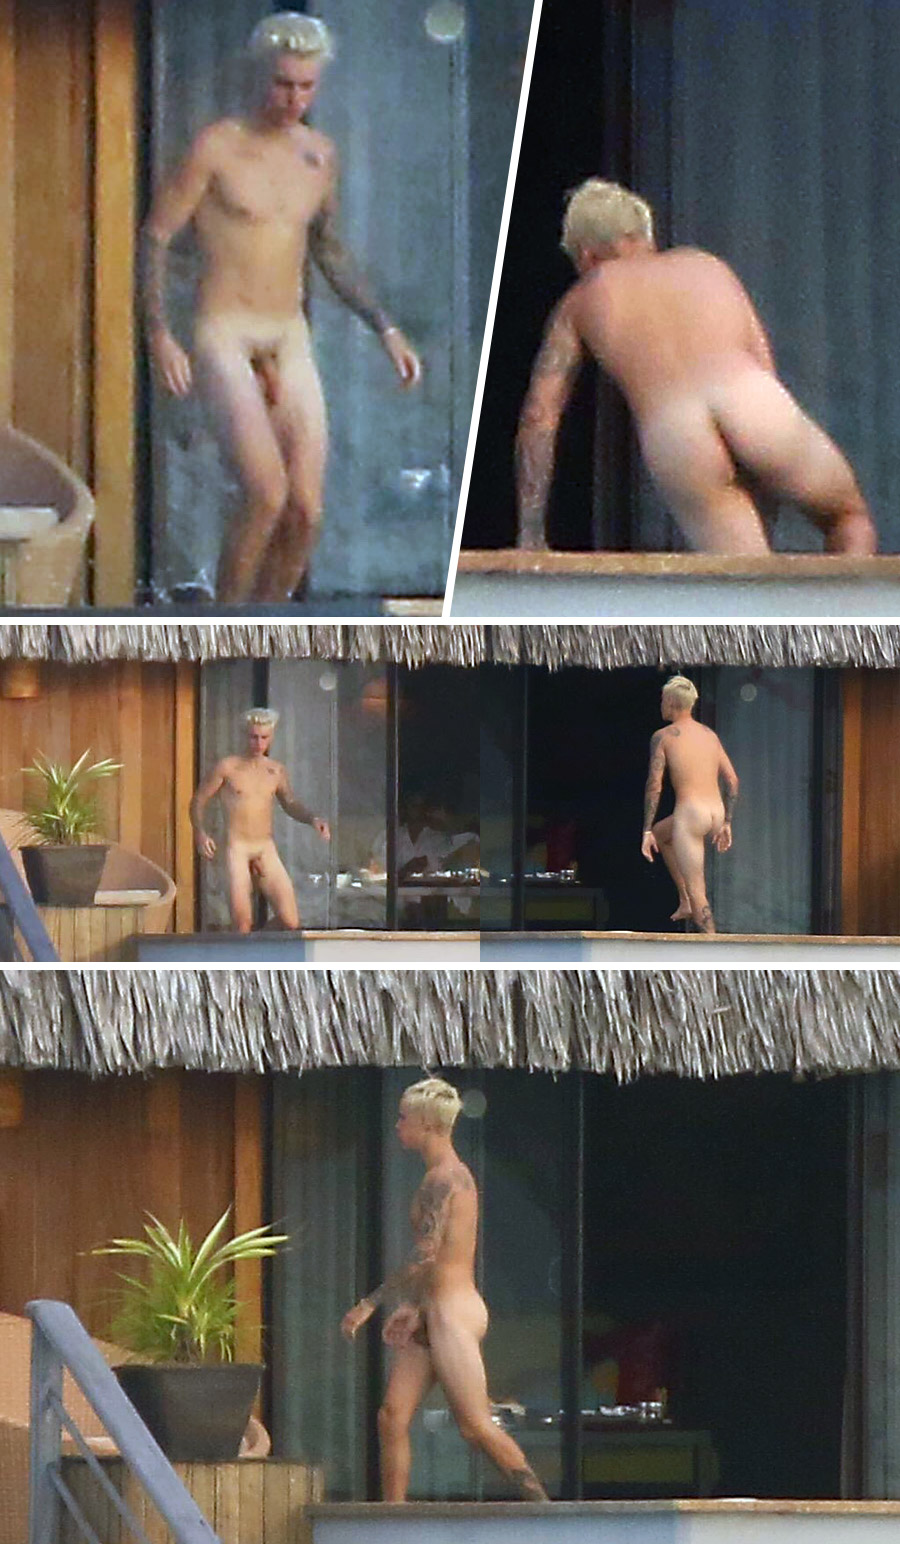 Celebrities caught nude